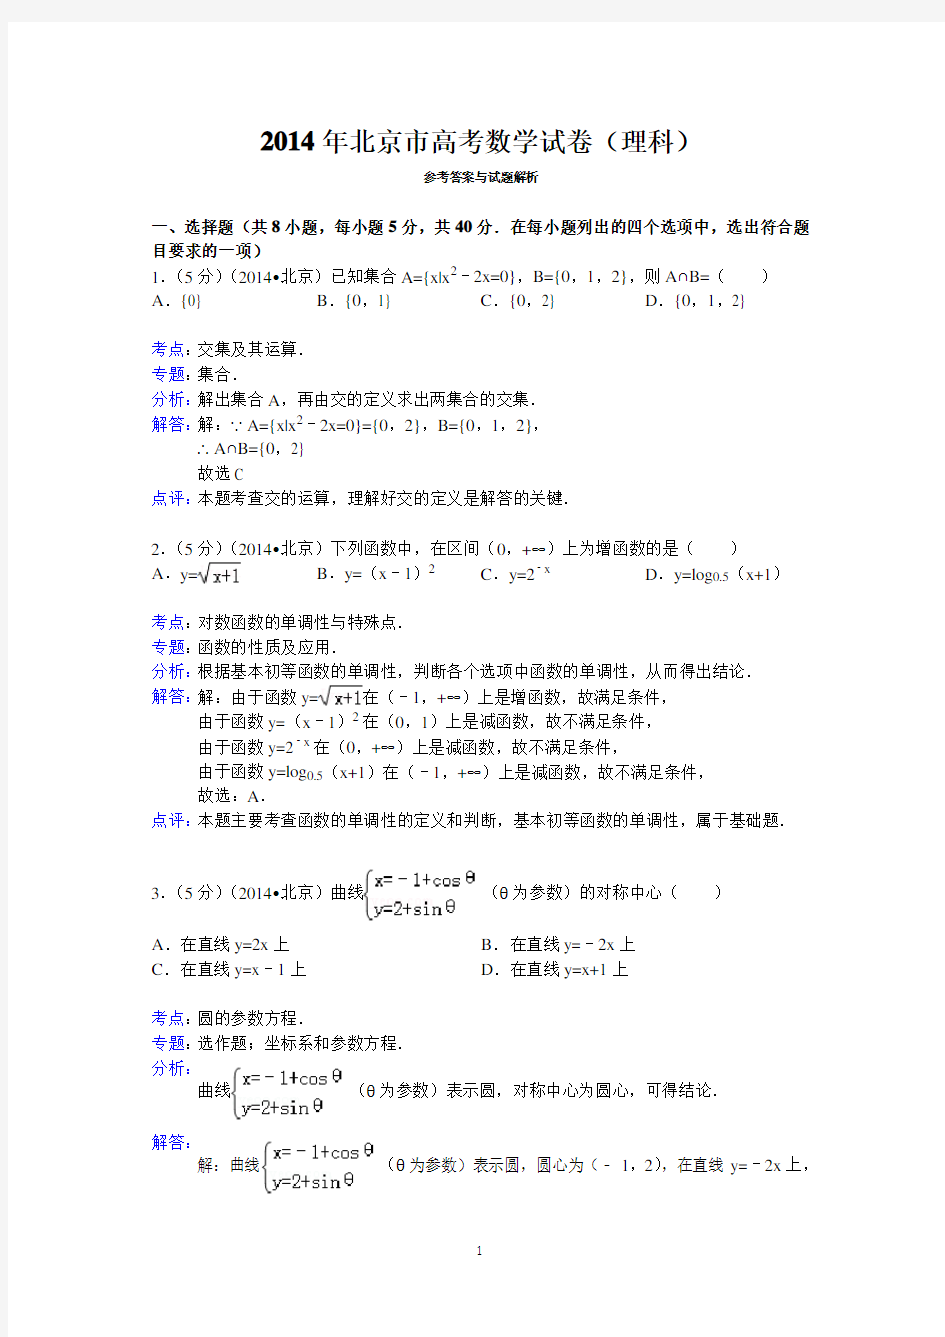 (完整版)2014年北京市高考数学试卷(理科)答案与解析